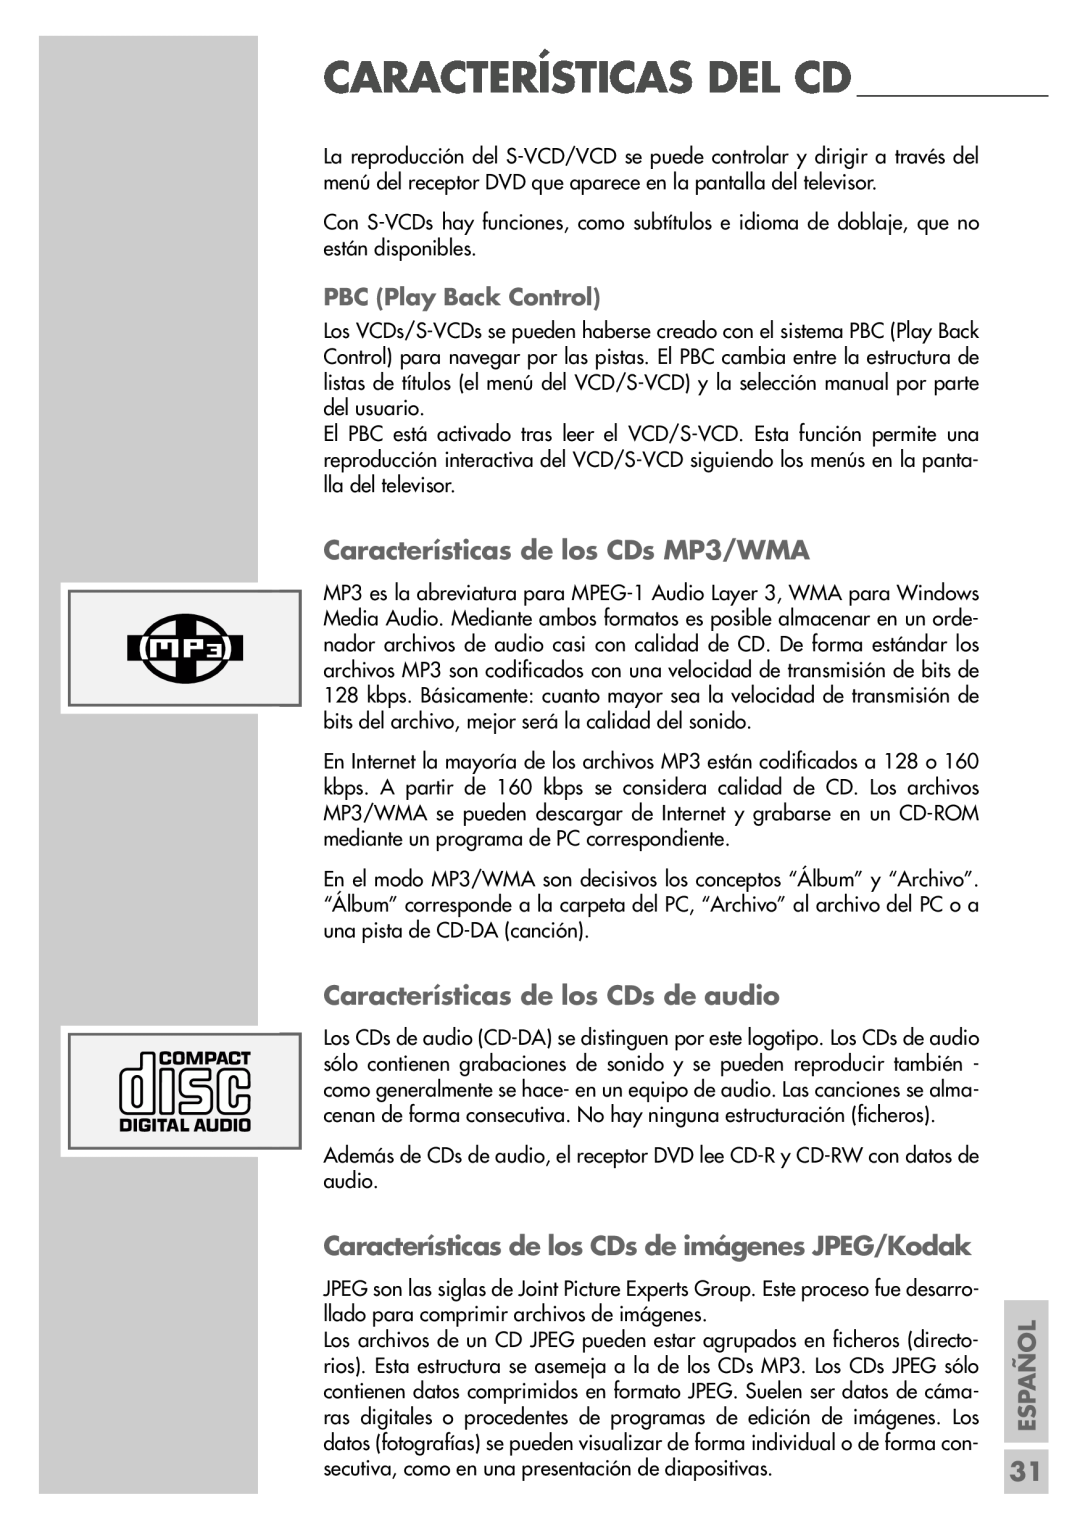 Grundig DR 5400 DD Características de los CDs MP3/WMA, Características de los CDs de audio, PBC Play Back Control, Español 